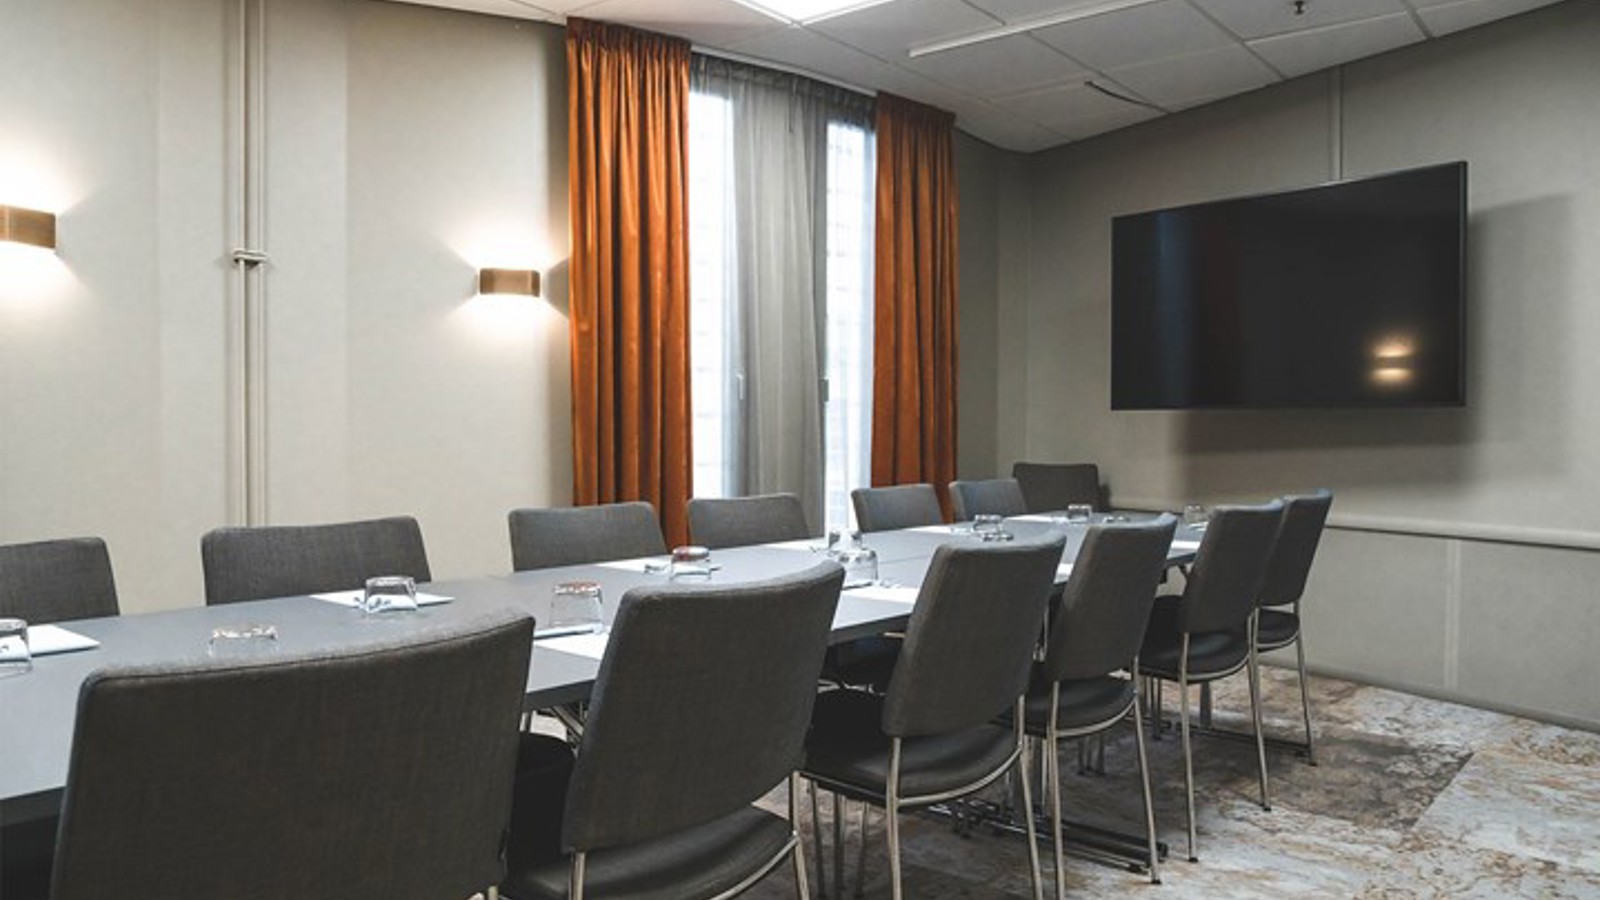 Konferensrum med styrelsesittning, grå stolar, grått bord, tv, rostbruna gardiner